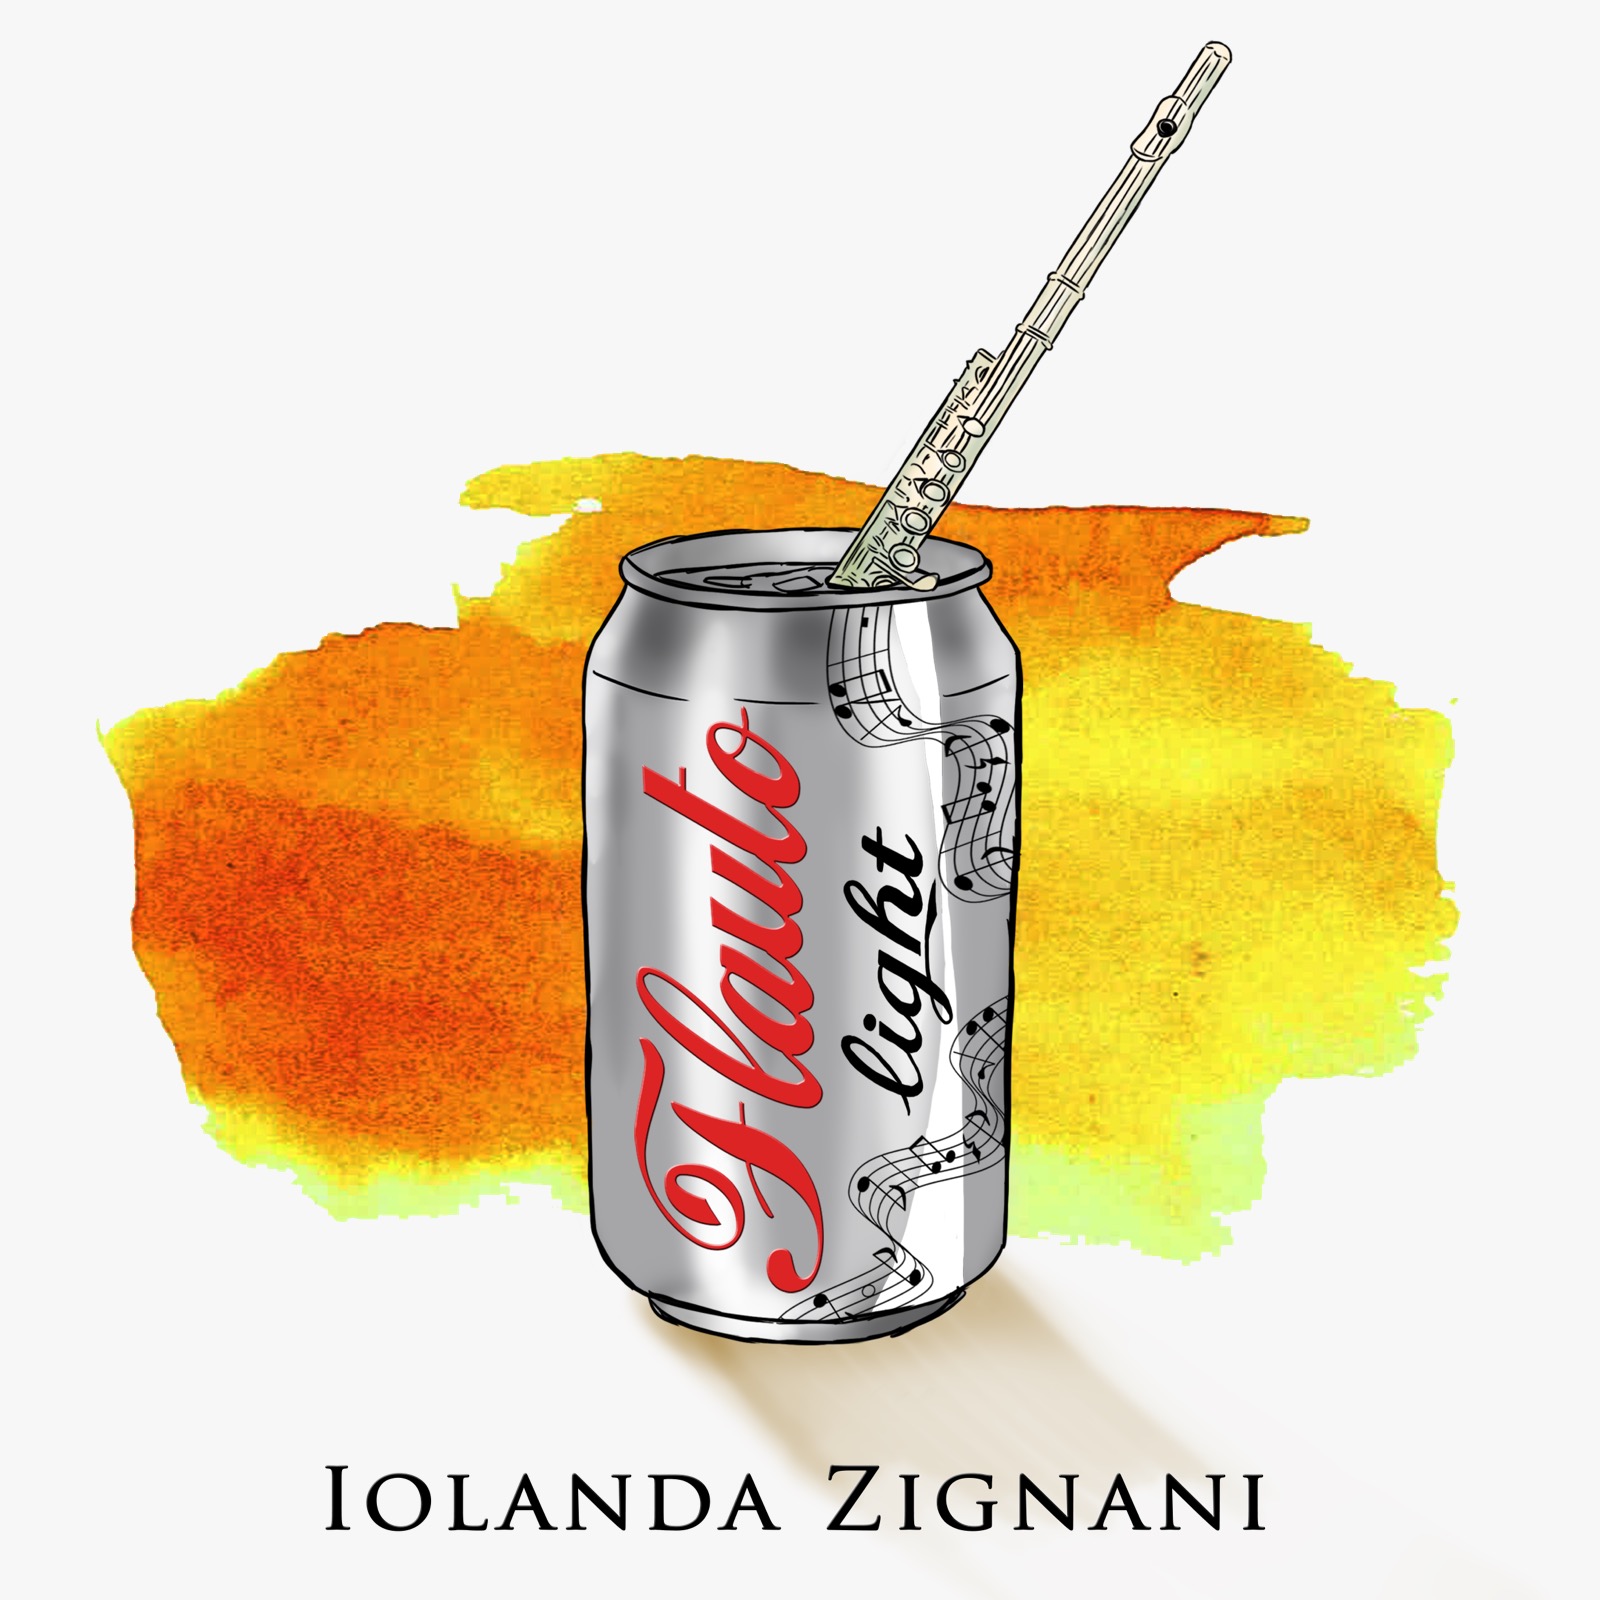 La copertina del disco "Flauto Light" di Iolanda Zignani